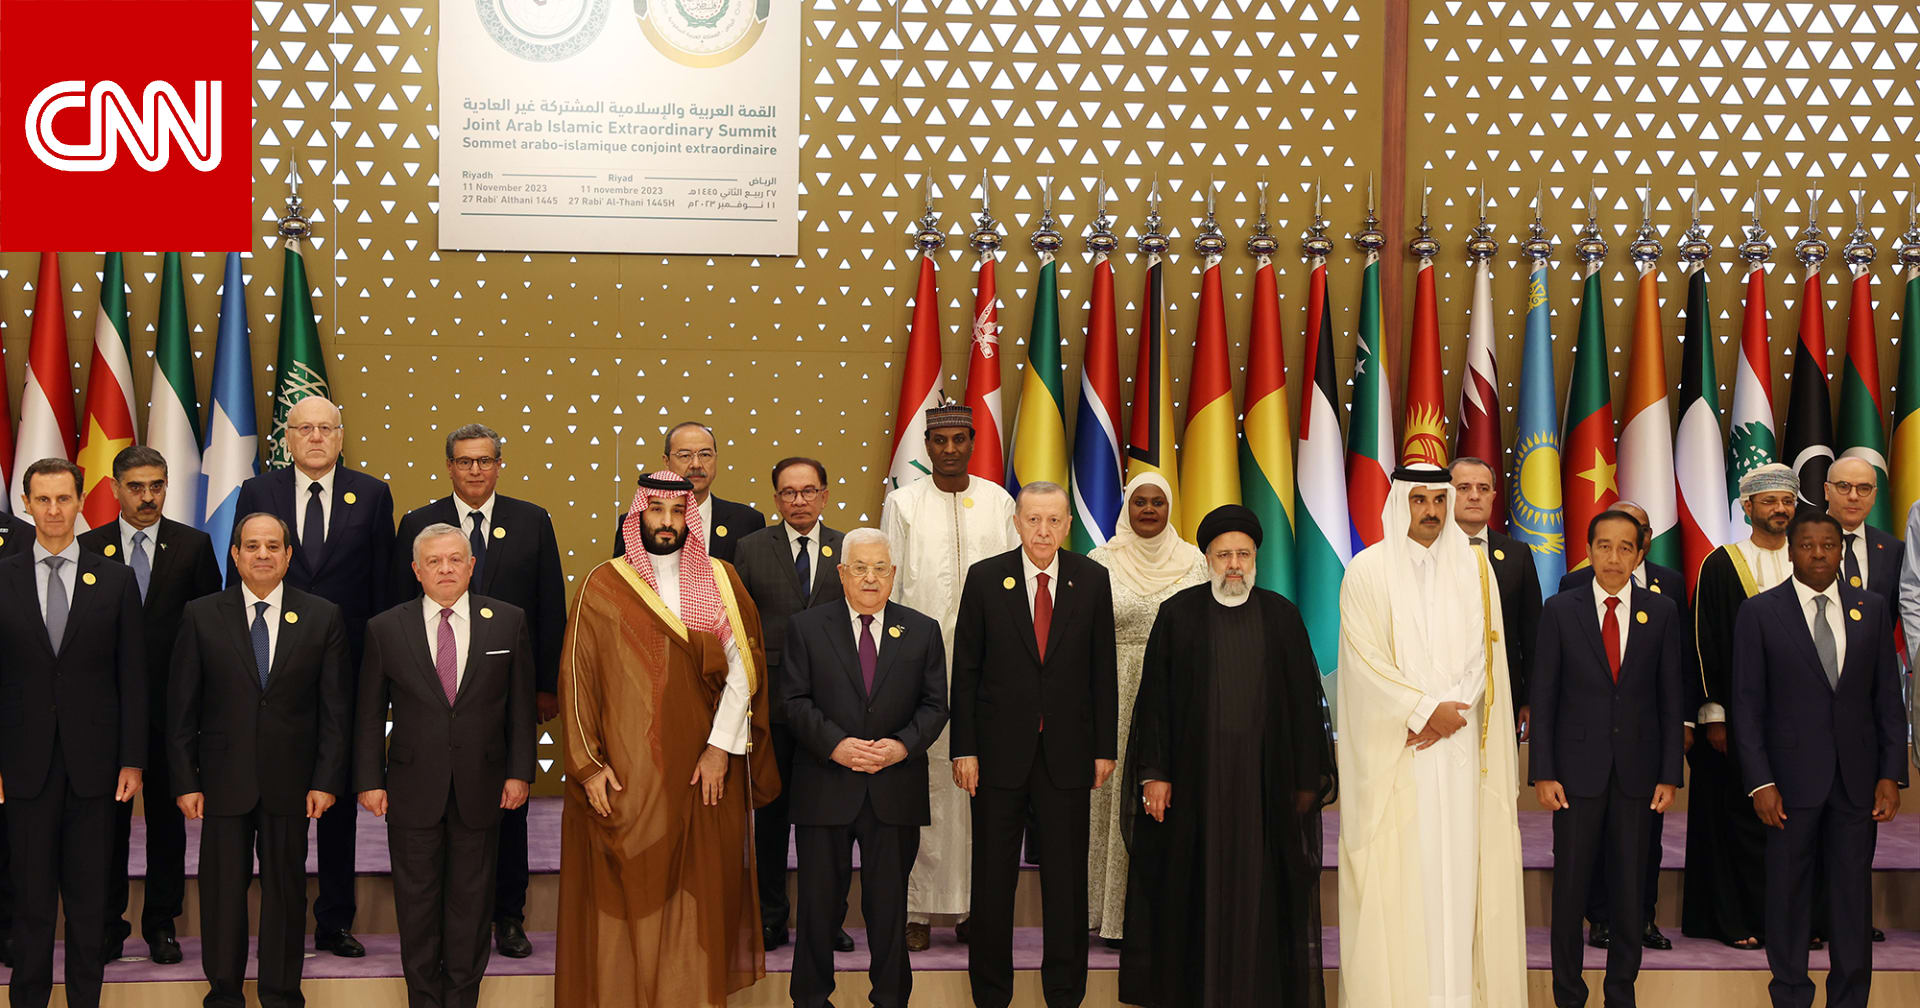 البيان الختامي للقمة العربية الإسلامية في الرياض يدين "العدوان الإسرائيلي وجرائم الحرب في غزة"